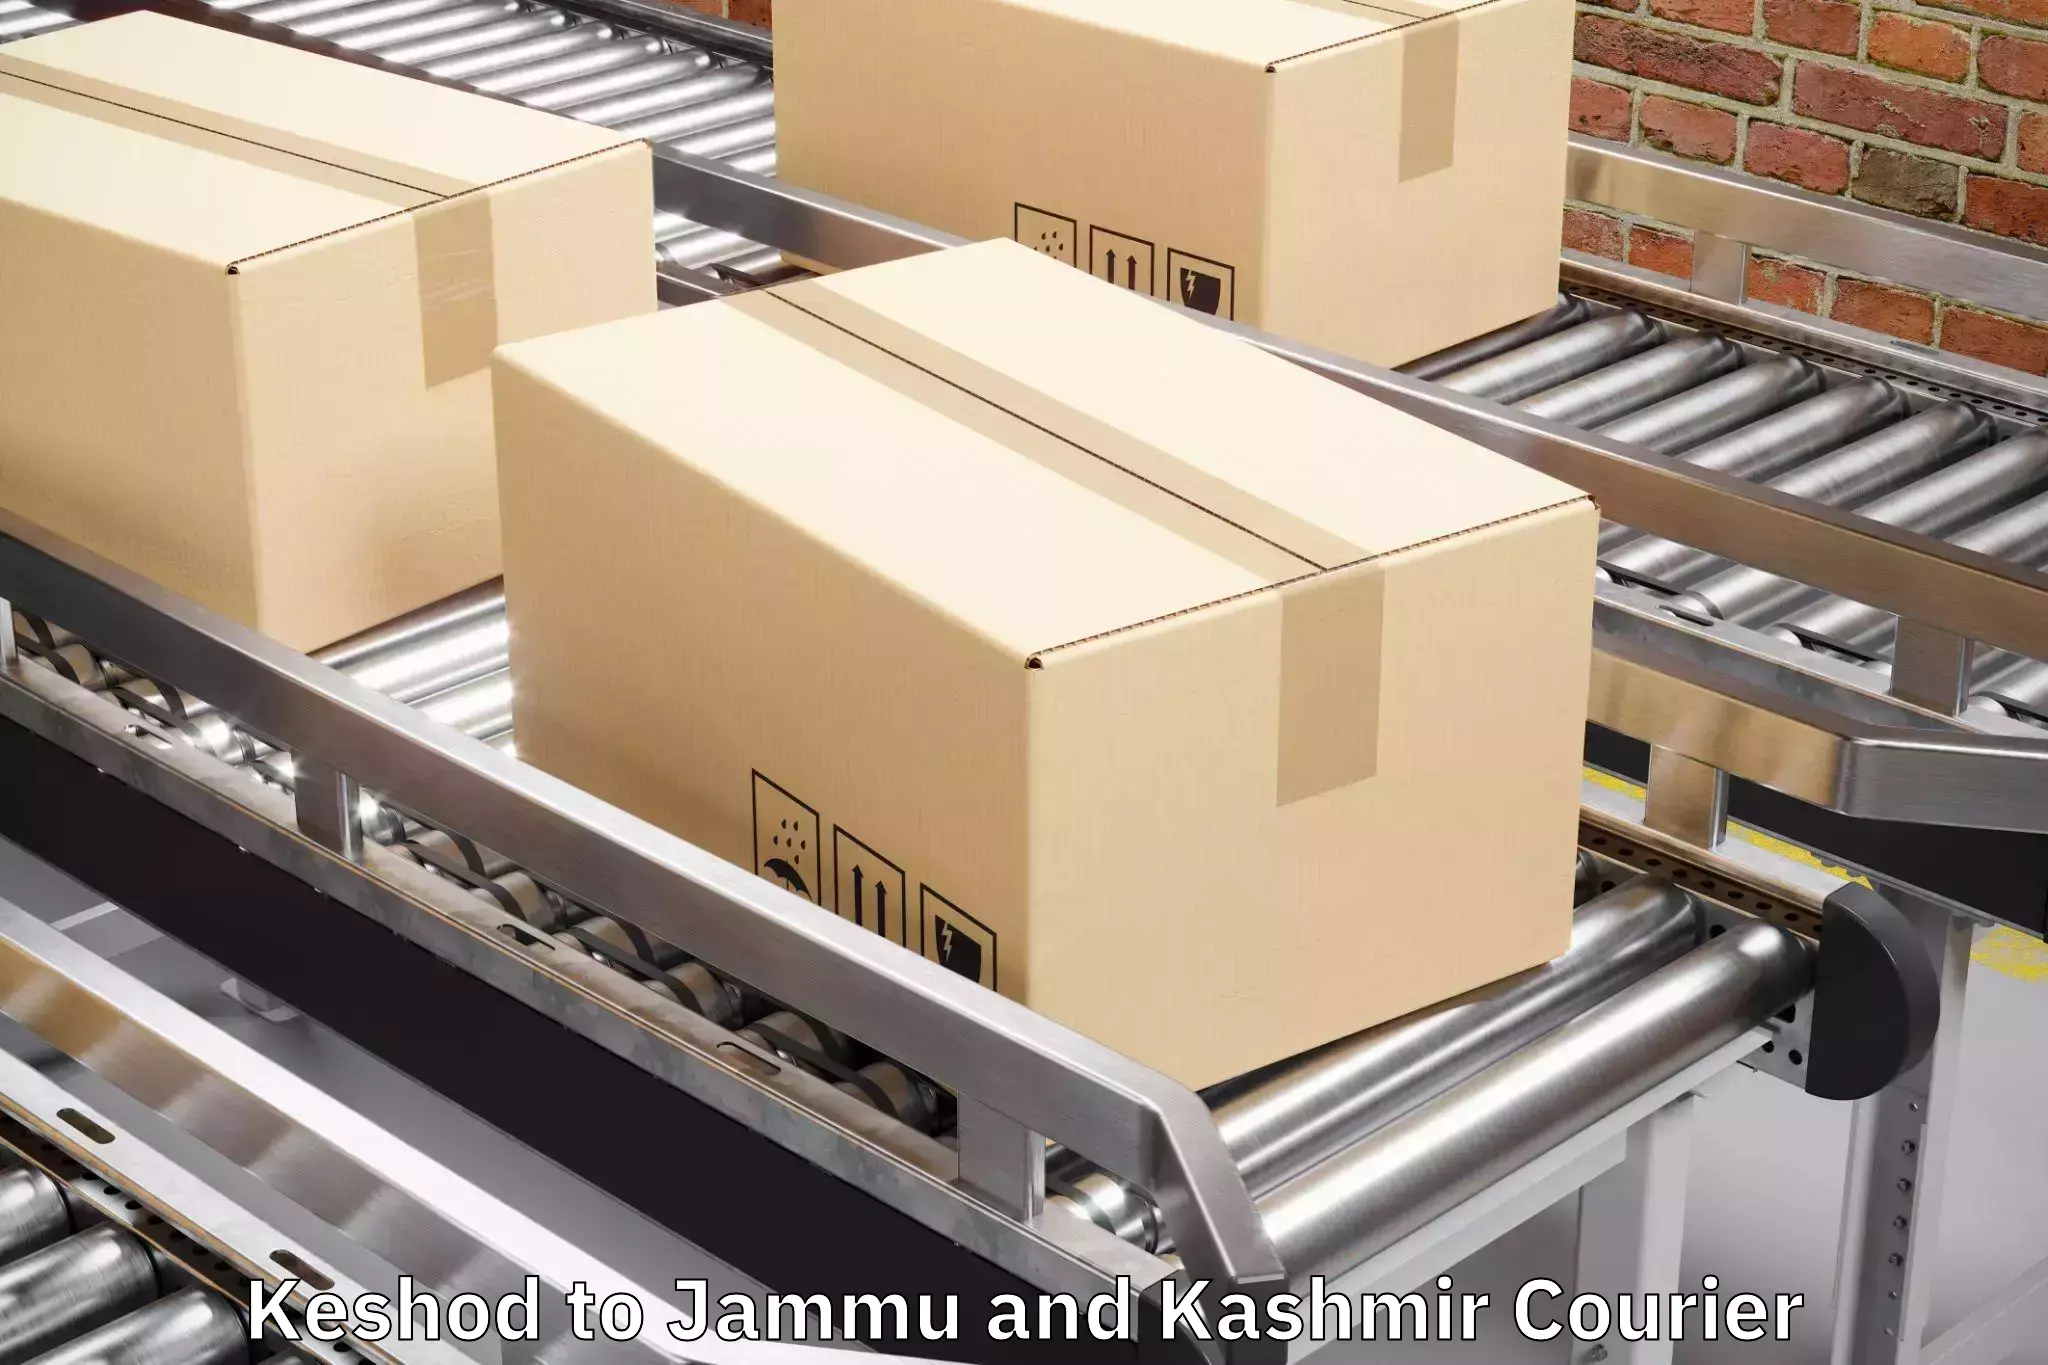 Luggage transport rates Keshod to University of Jammu